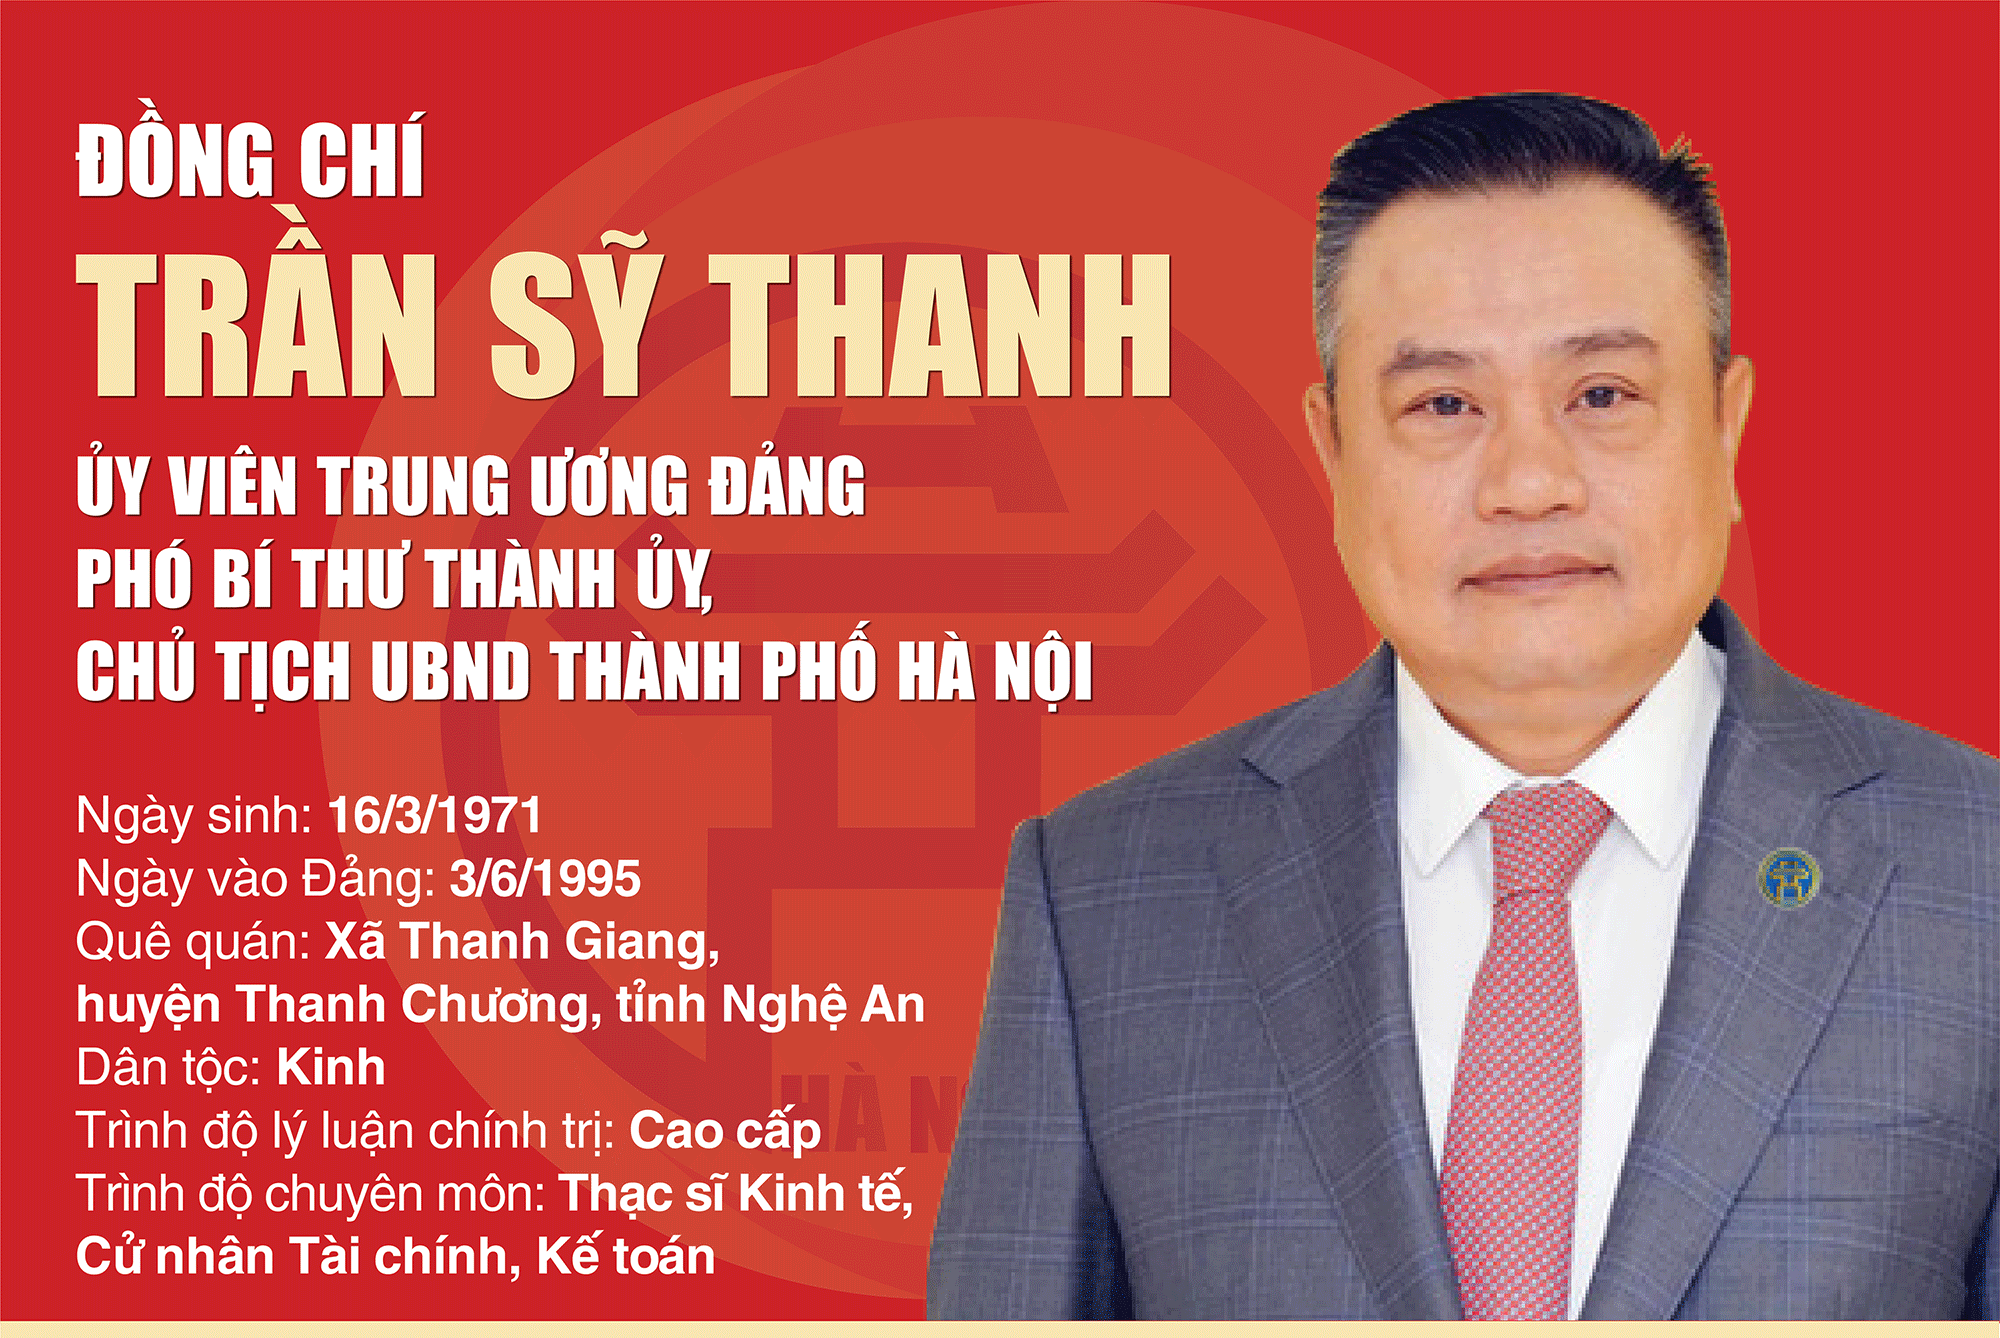 Quá trình công tác của tân Chủ tịch UBND TP Hà Nội Trần Sỹ Thanh